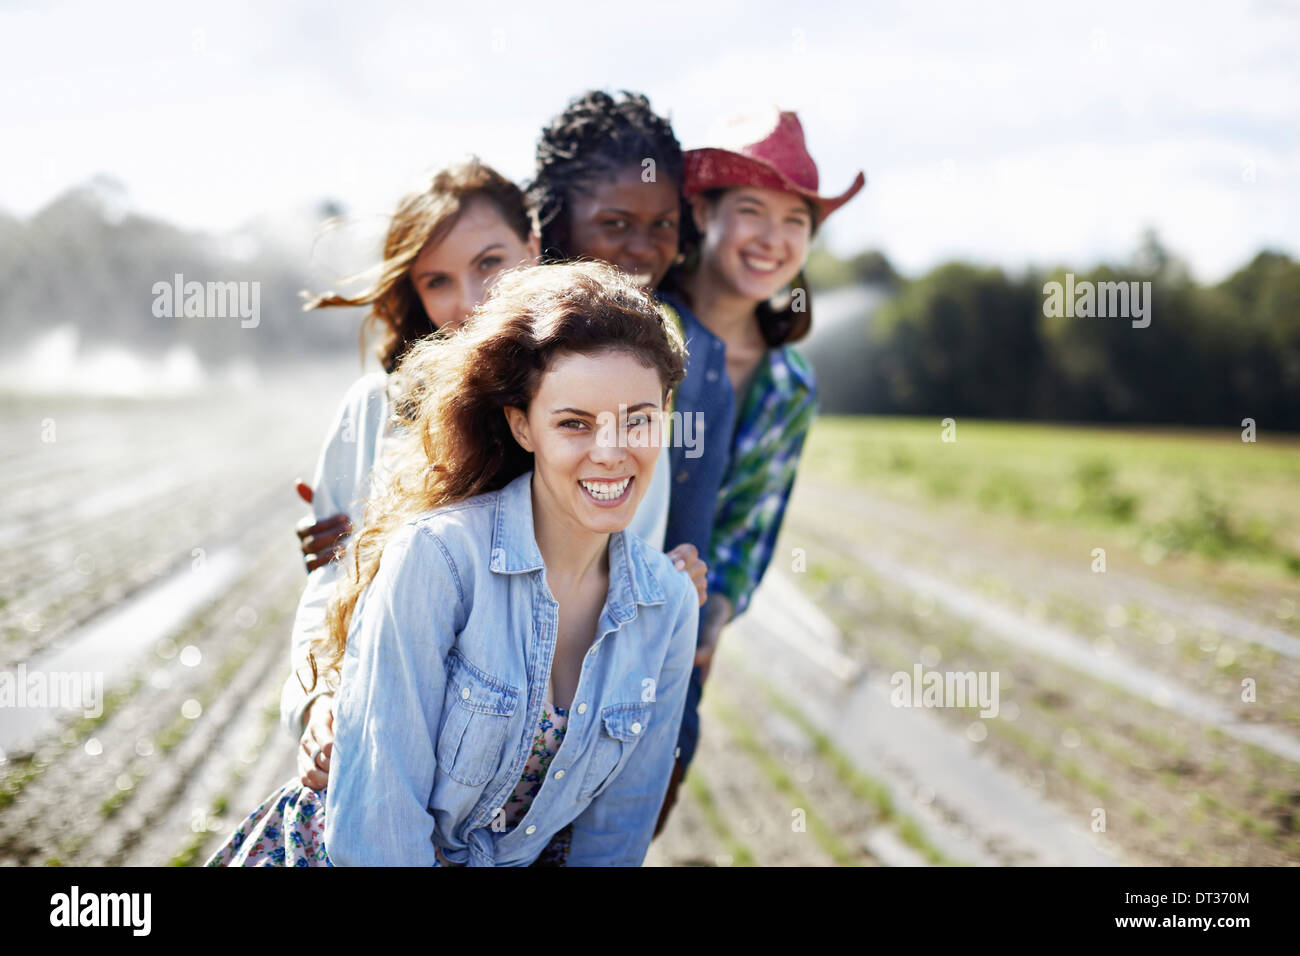 Quattro giovani donne in un campo pieno di piantine un organico raccolto con sprinkler la spruzzatura di acqua in background Foto Stock